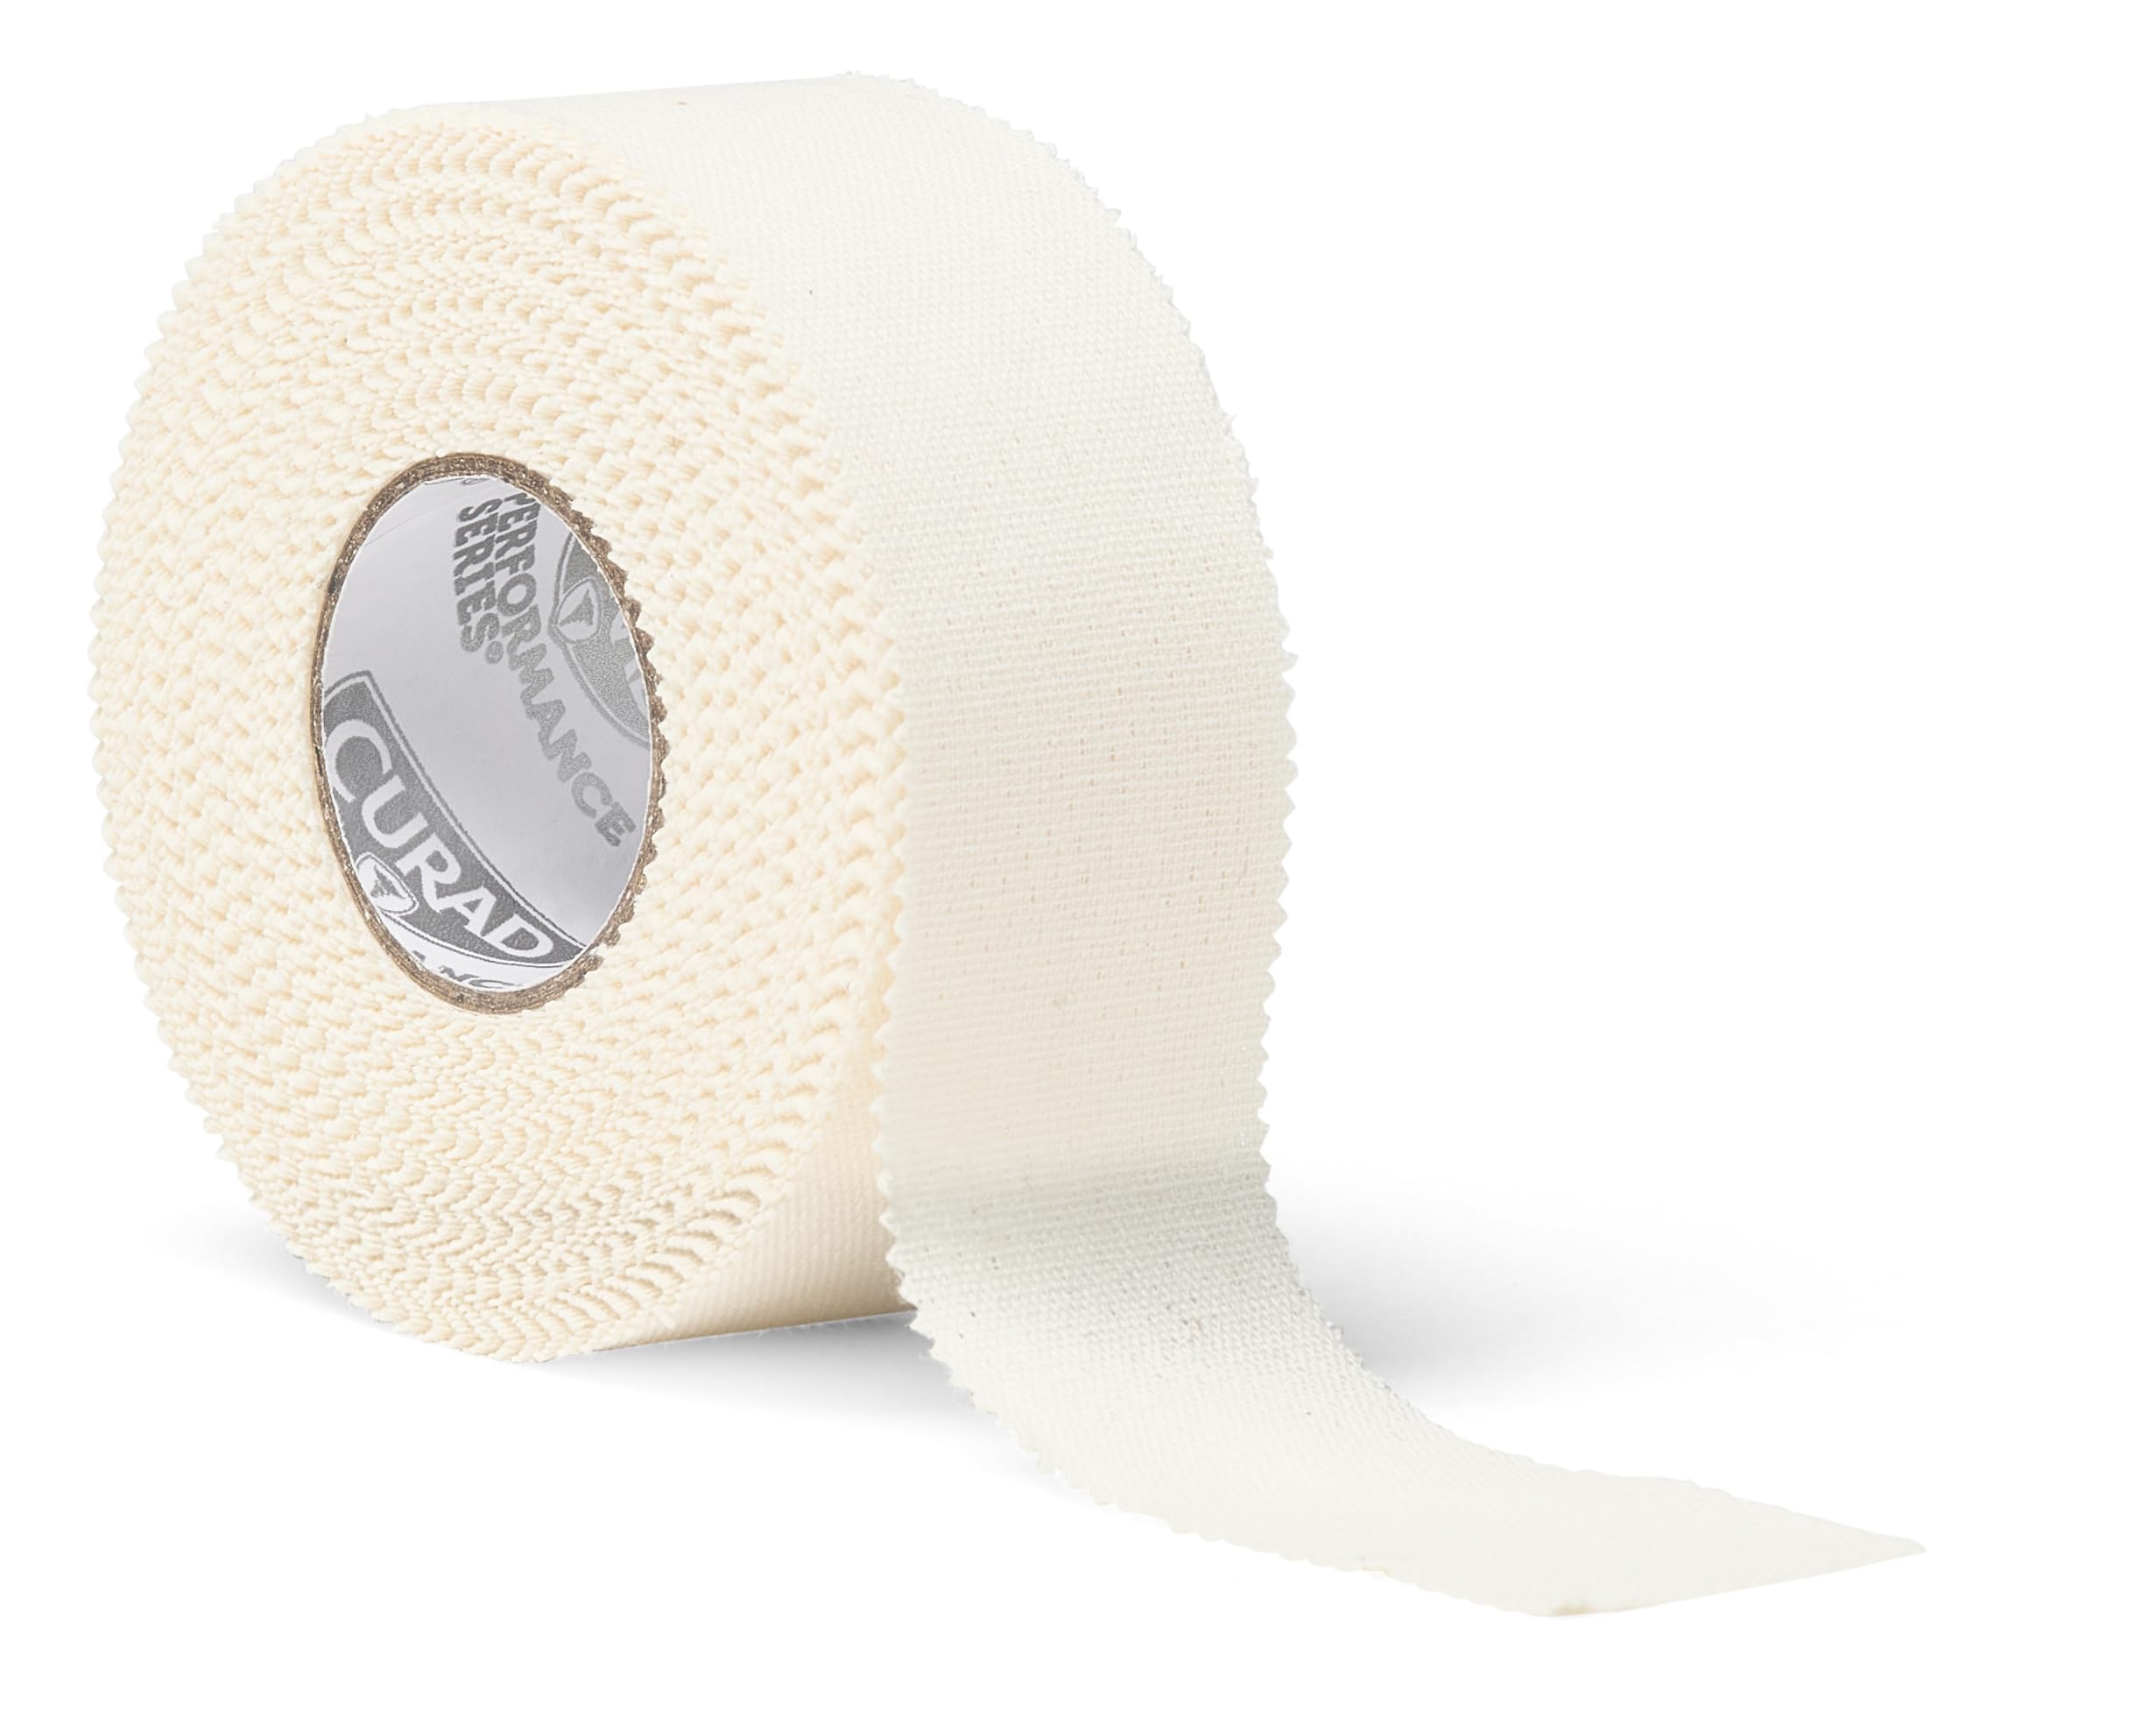 Curad Performance Series Premium Porous Cotton Tape, 1